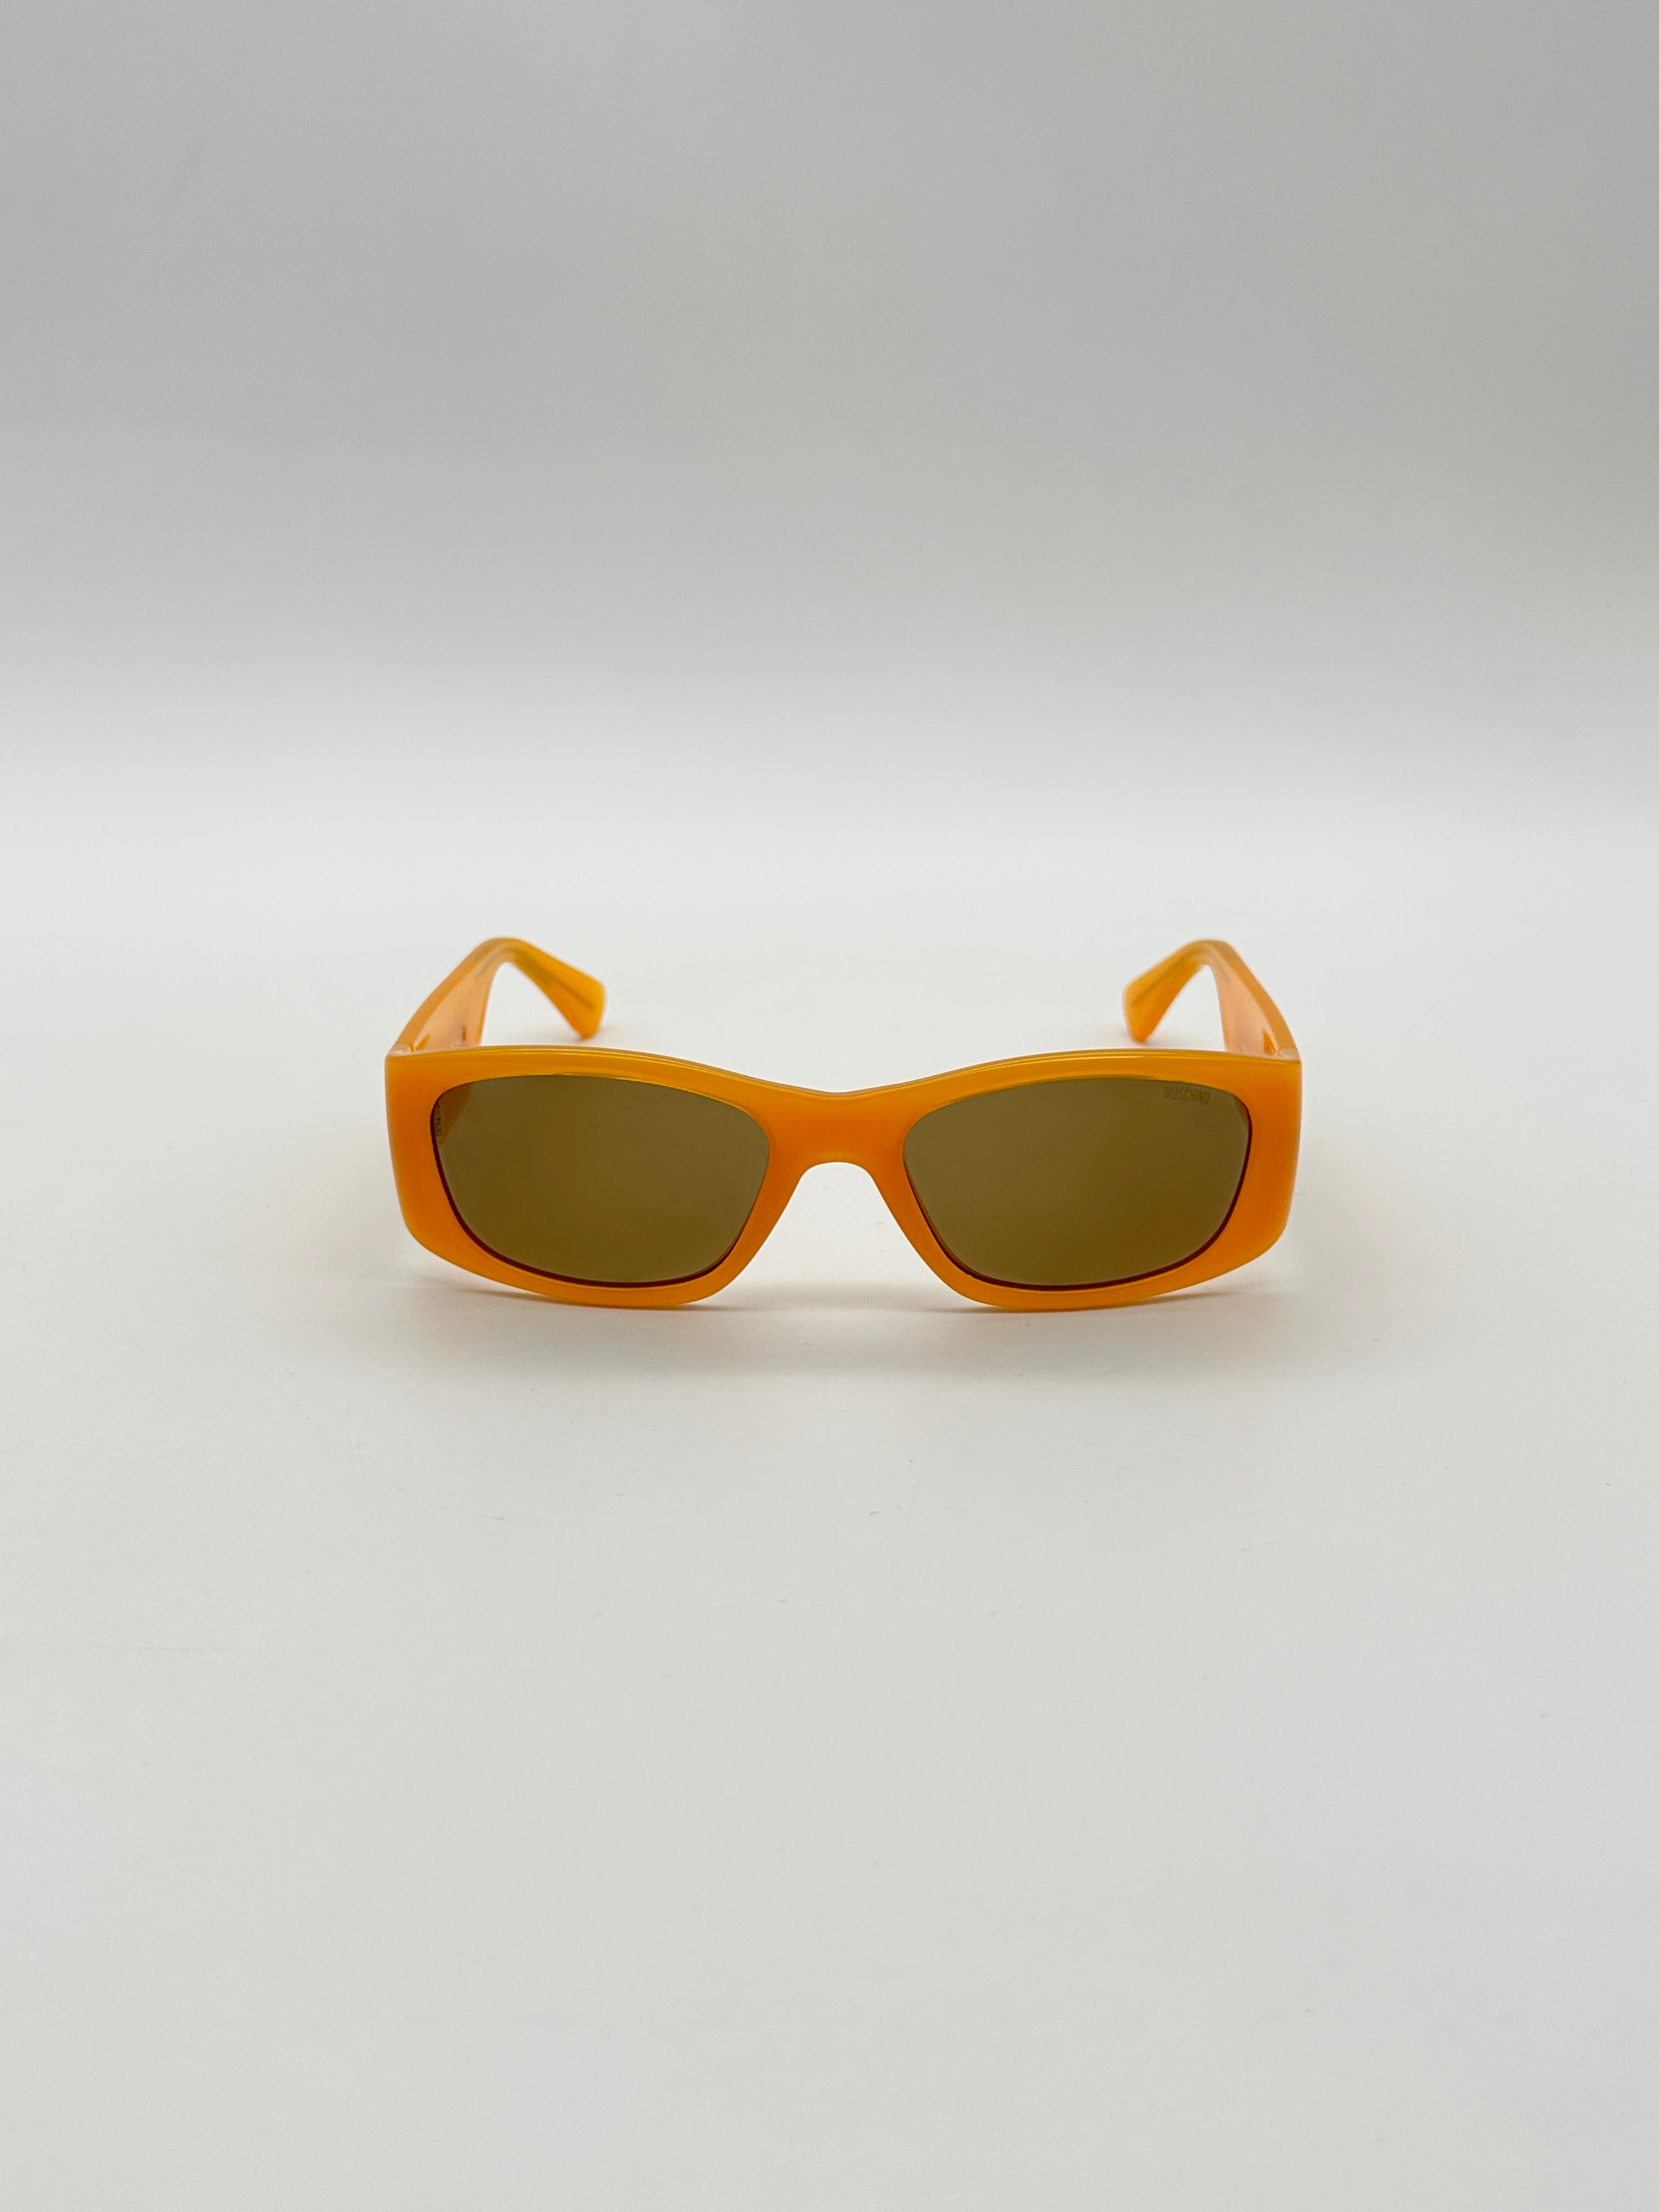 Sunglasses Lettering Logo